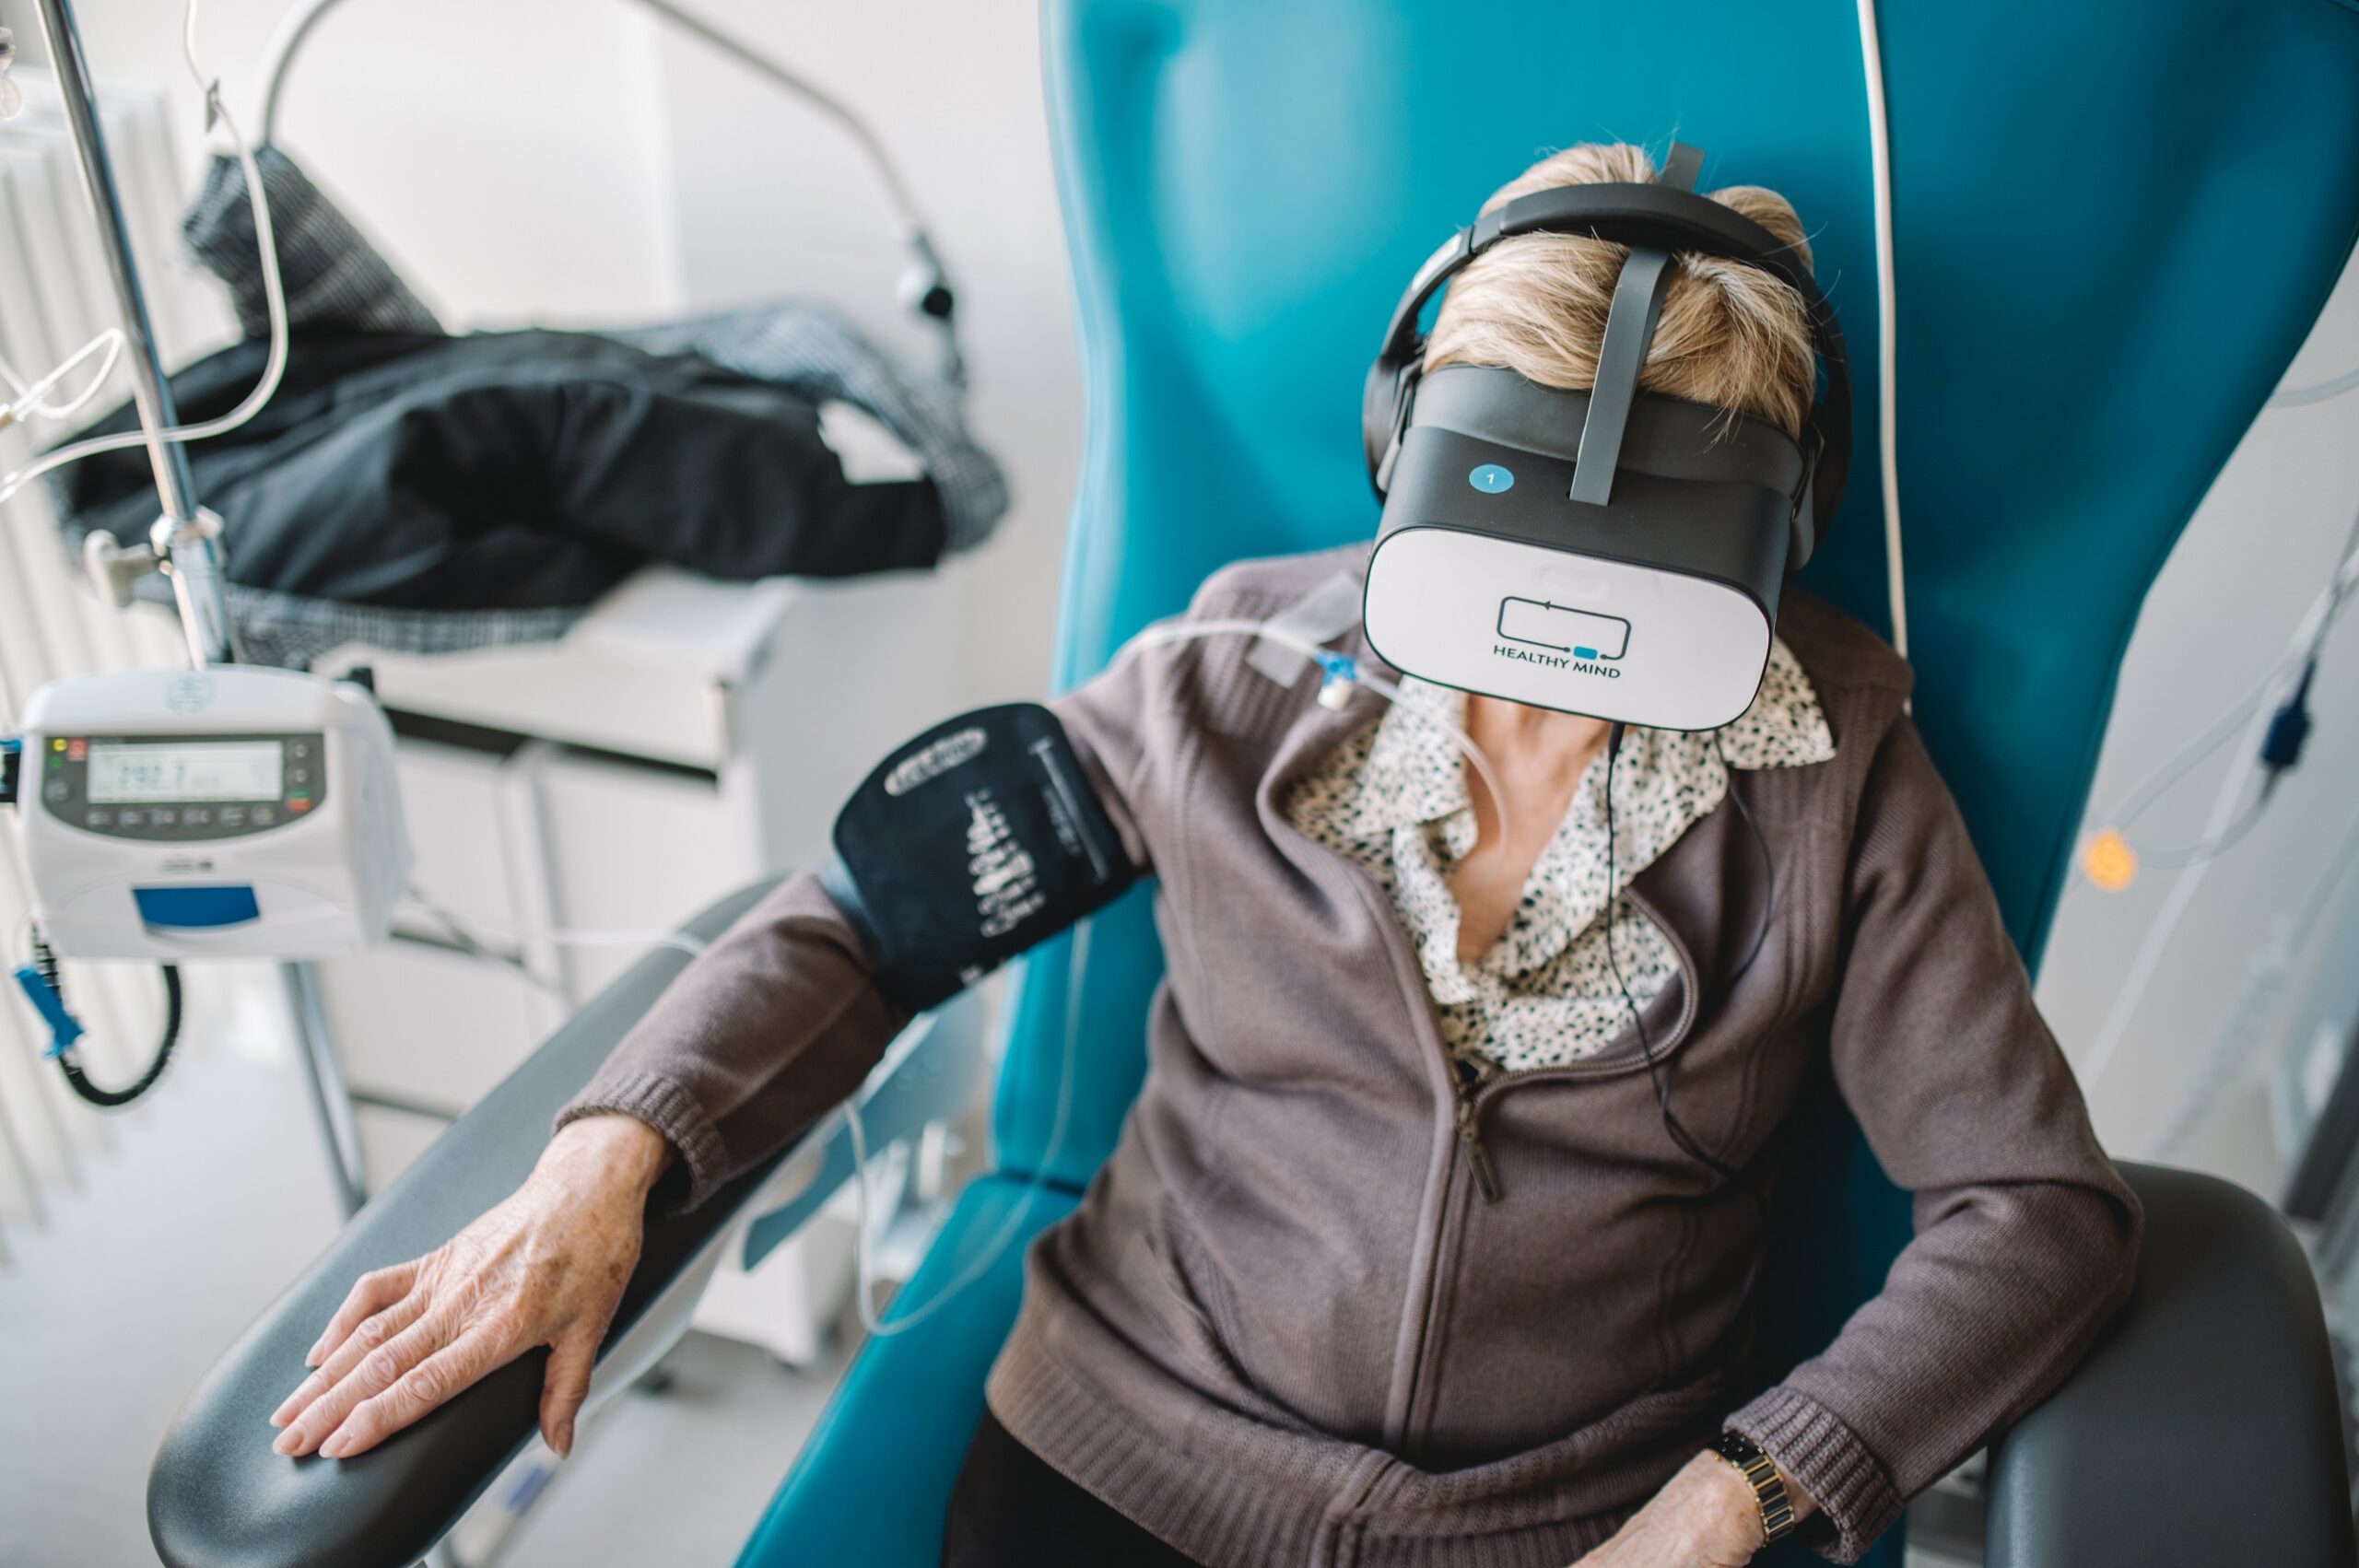 La réalité virtuelle aident les patients en chimiothérapie à apaiser l'anxiété et les douleurs.